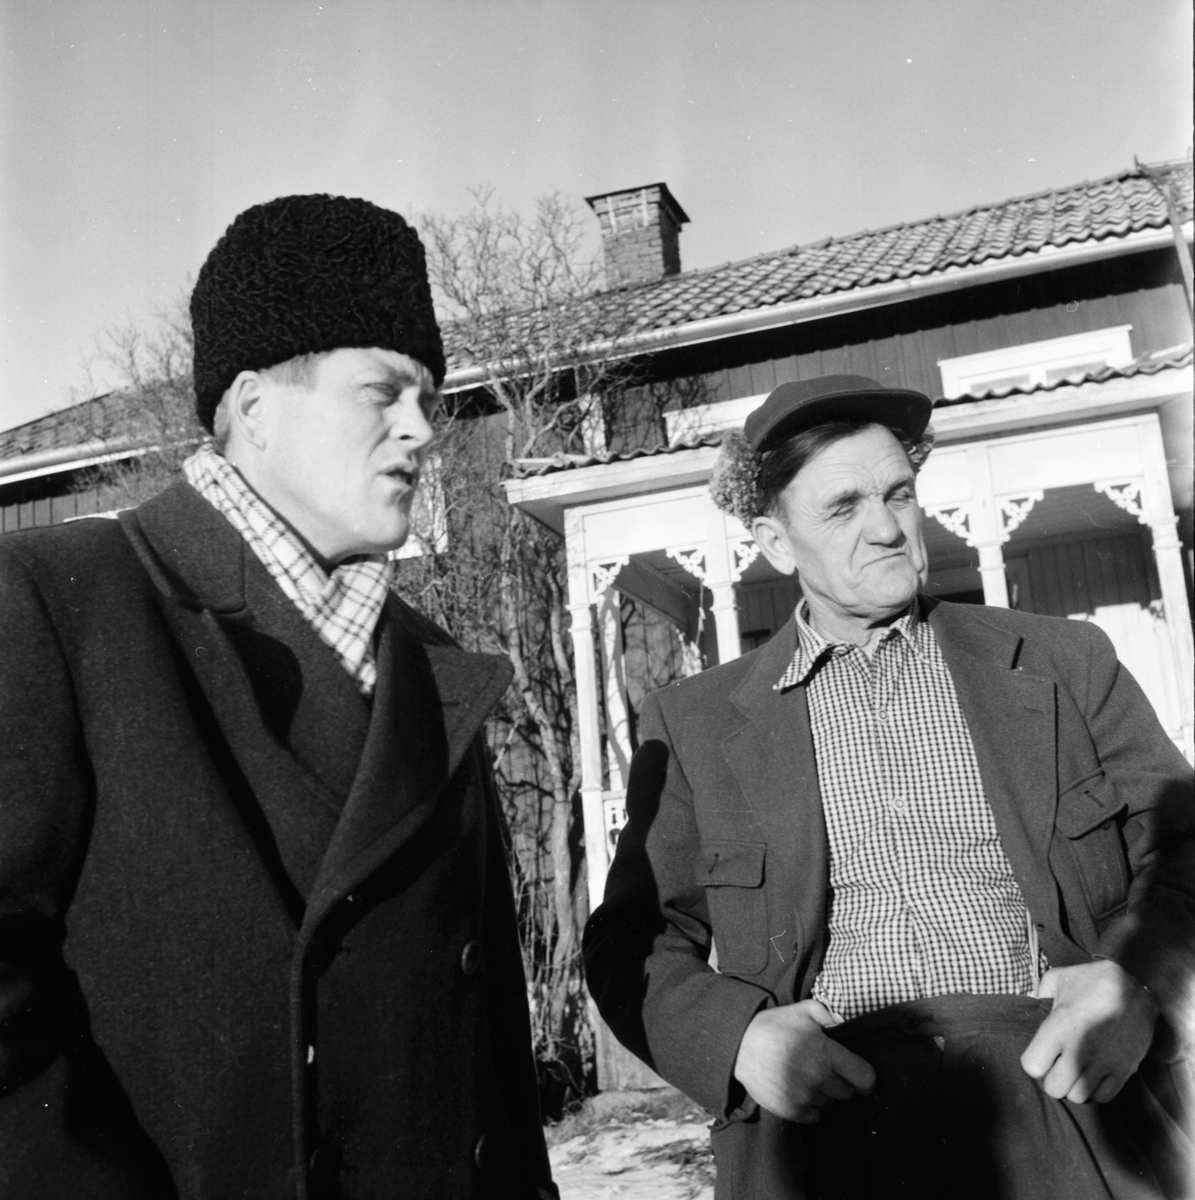 Andesladugård. Jonas Jonsson, Per Berglöf, Viktor Andersson.
Forsa december 1957